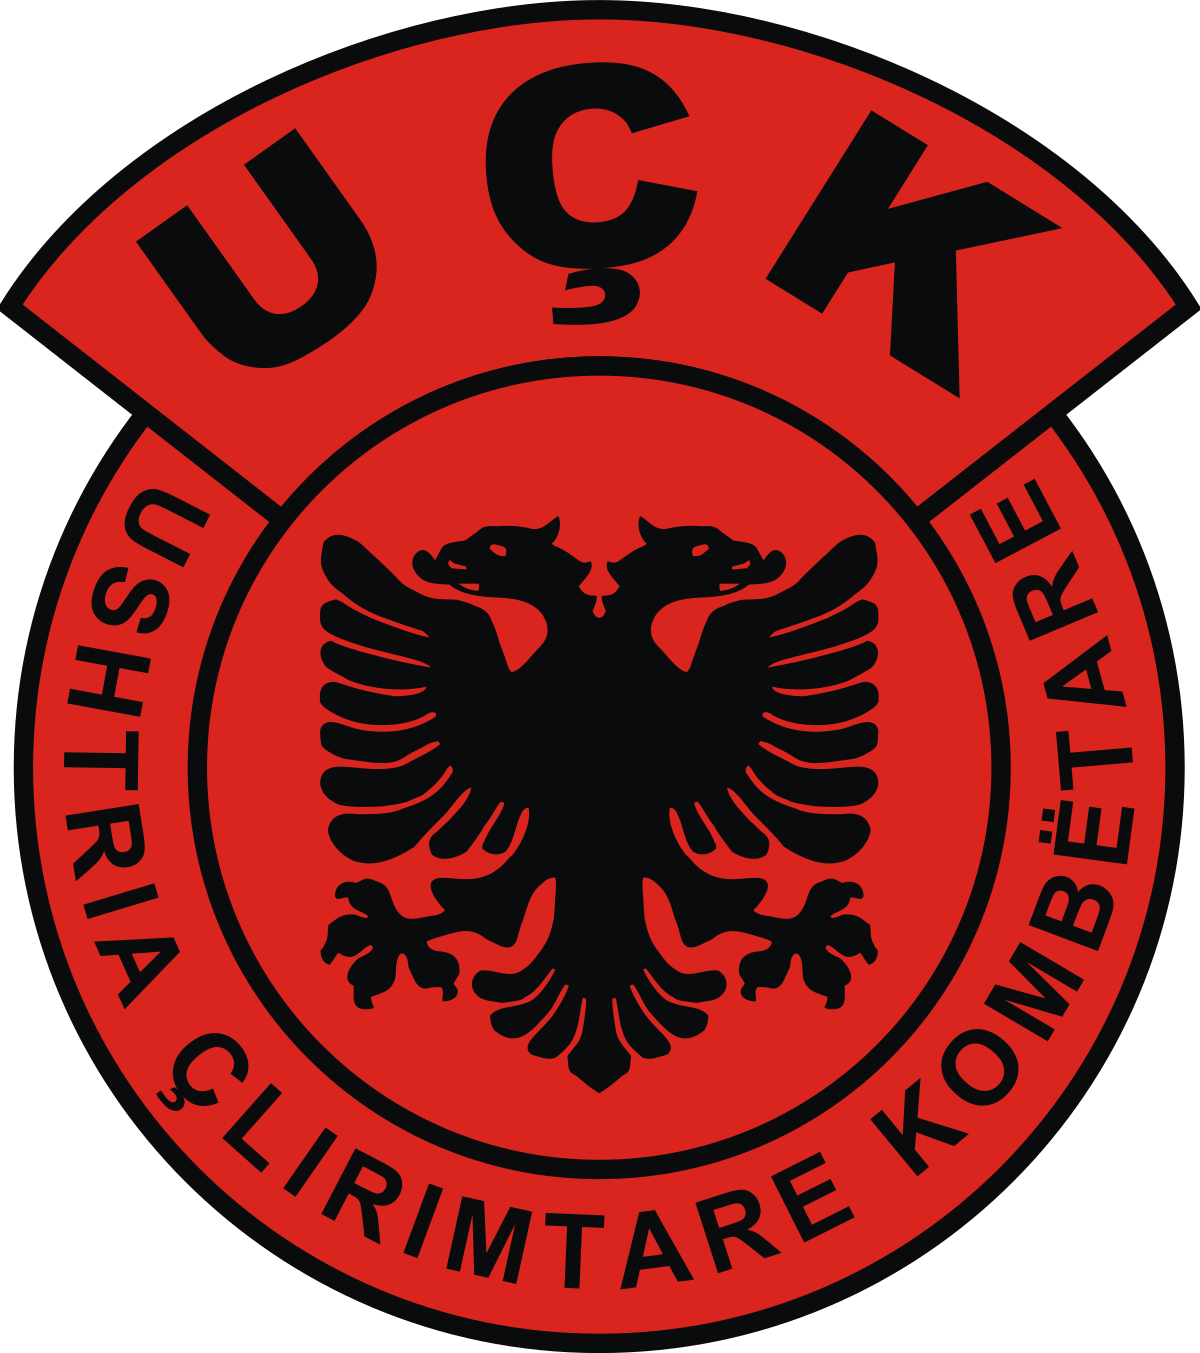 1993年、コソボ側は独立を目的とした組織「コソボ解放軍（KLA）」を設立